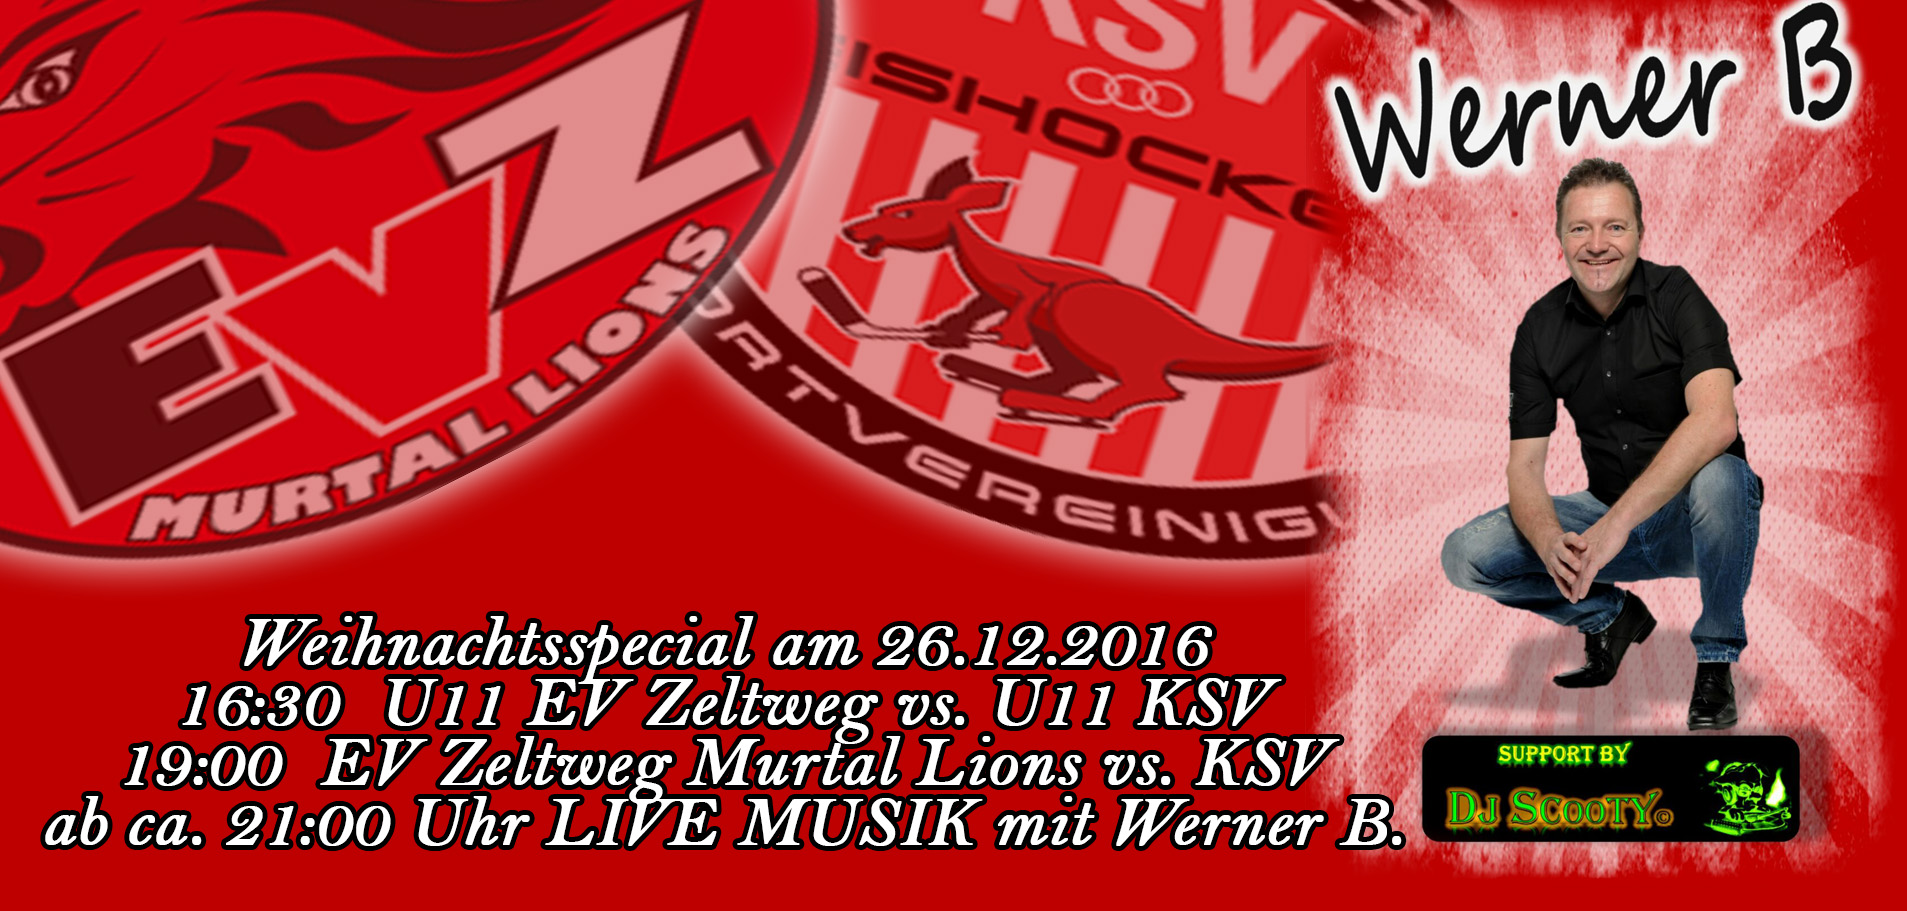 Weihnachtsspecial am 26.12.201616:30 U11 EV Zeltweg vs. U11 KSV 19:00 EV Zeltweg Murtal Lions vs. KSV ab ca. 21:00 Uhr LIVE MUSIK mit Werner B.